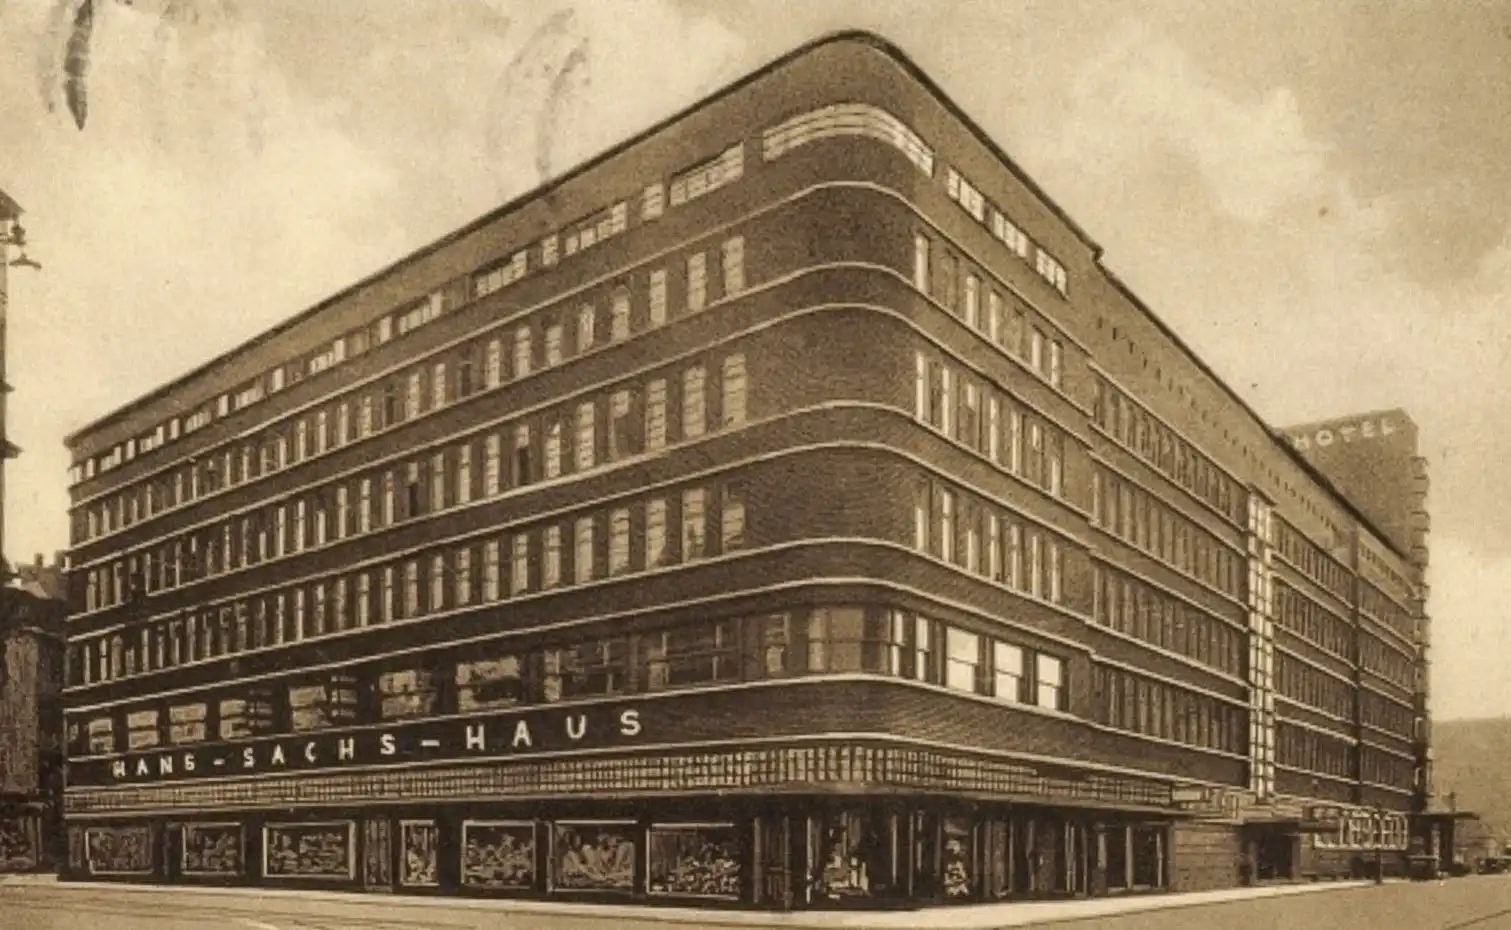 Hans-Sachs-Haus, 1924-1927. Architect: Alfred Fischer. Postcard.